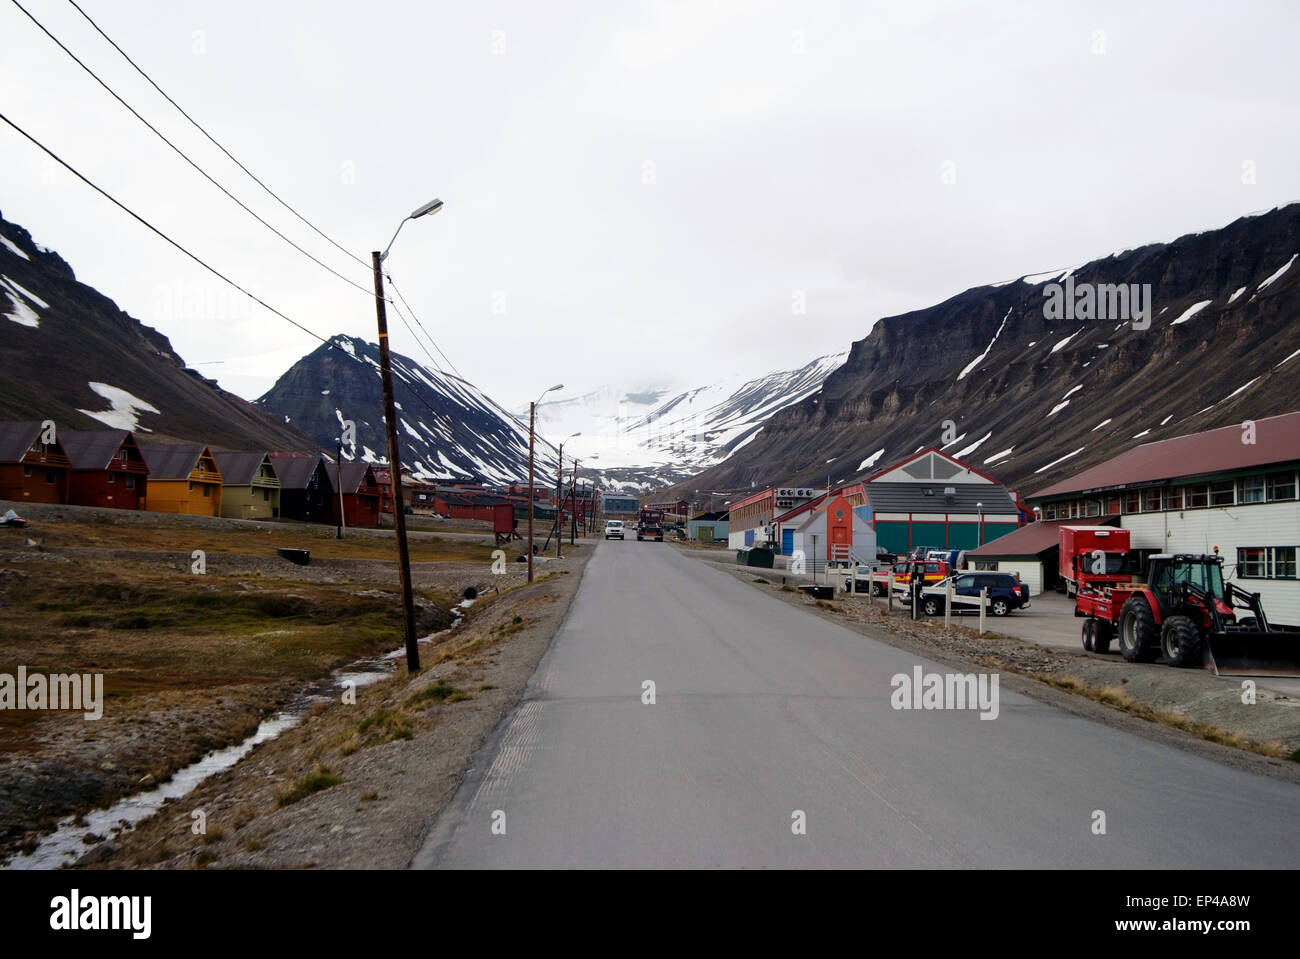 Rue avec maisons à Spitsbergen, Svalbard, Norvège sur une journée nuageuse. Banque D'Images